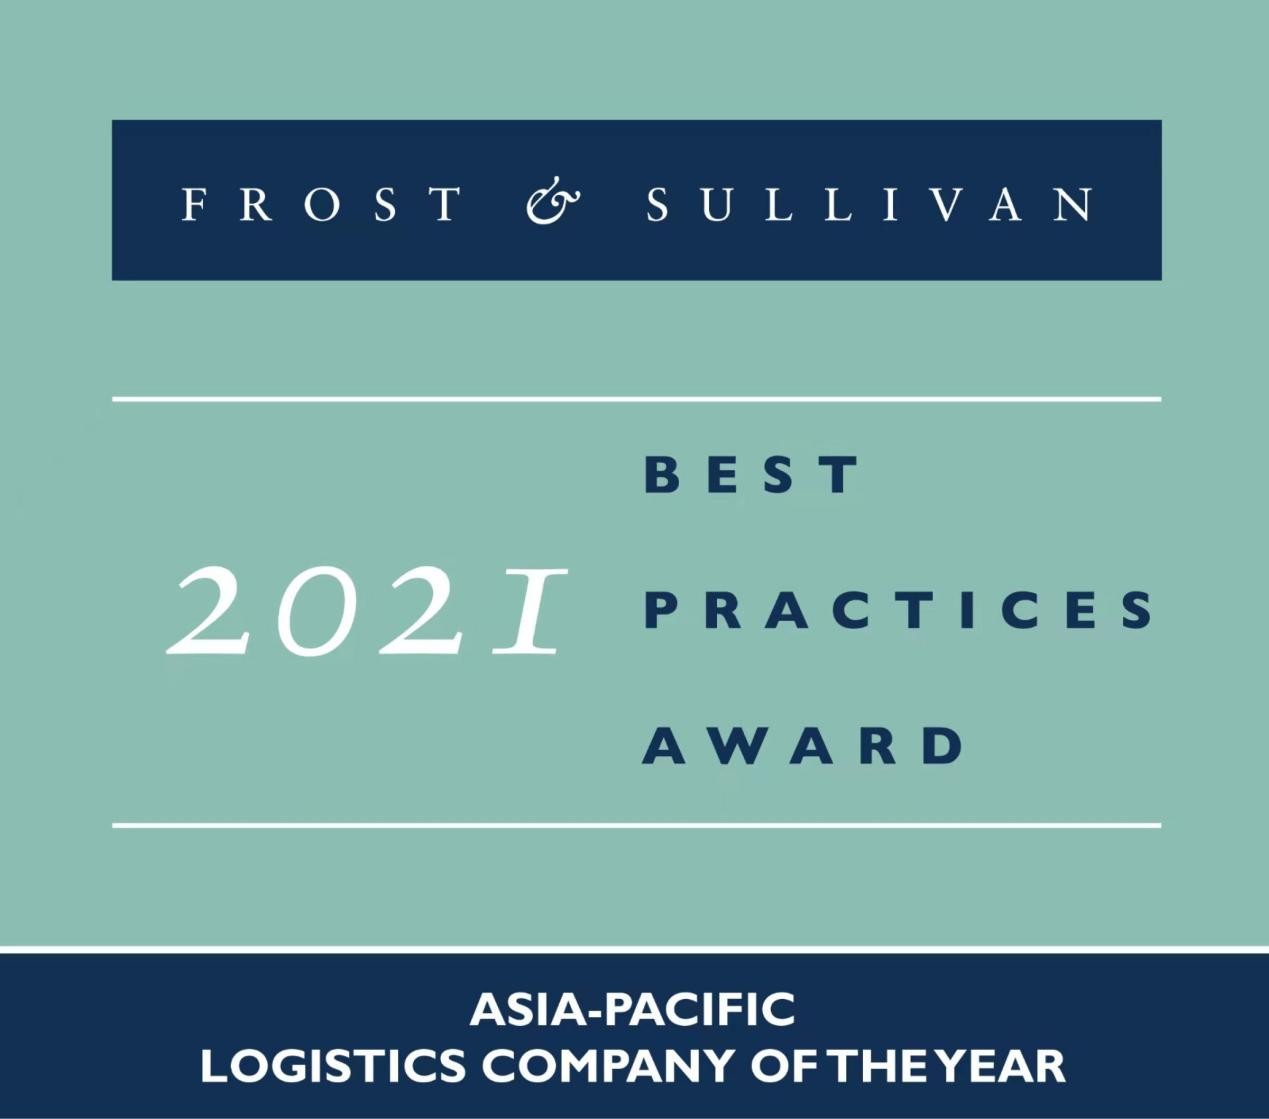 嘉里物流联网连续第五年蝉联Frost & Sullivan亚太区最佳实践奖